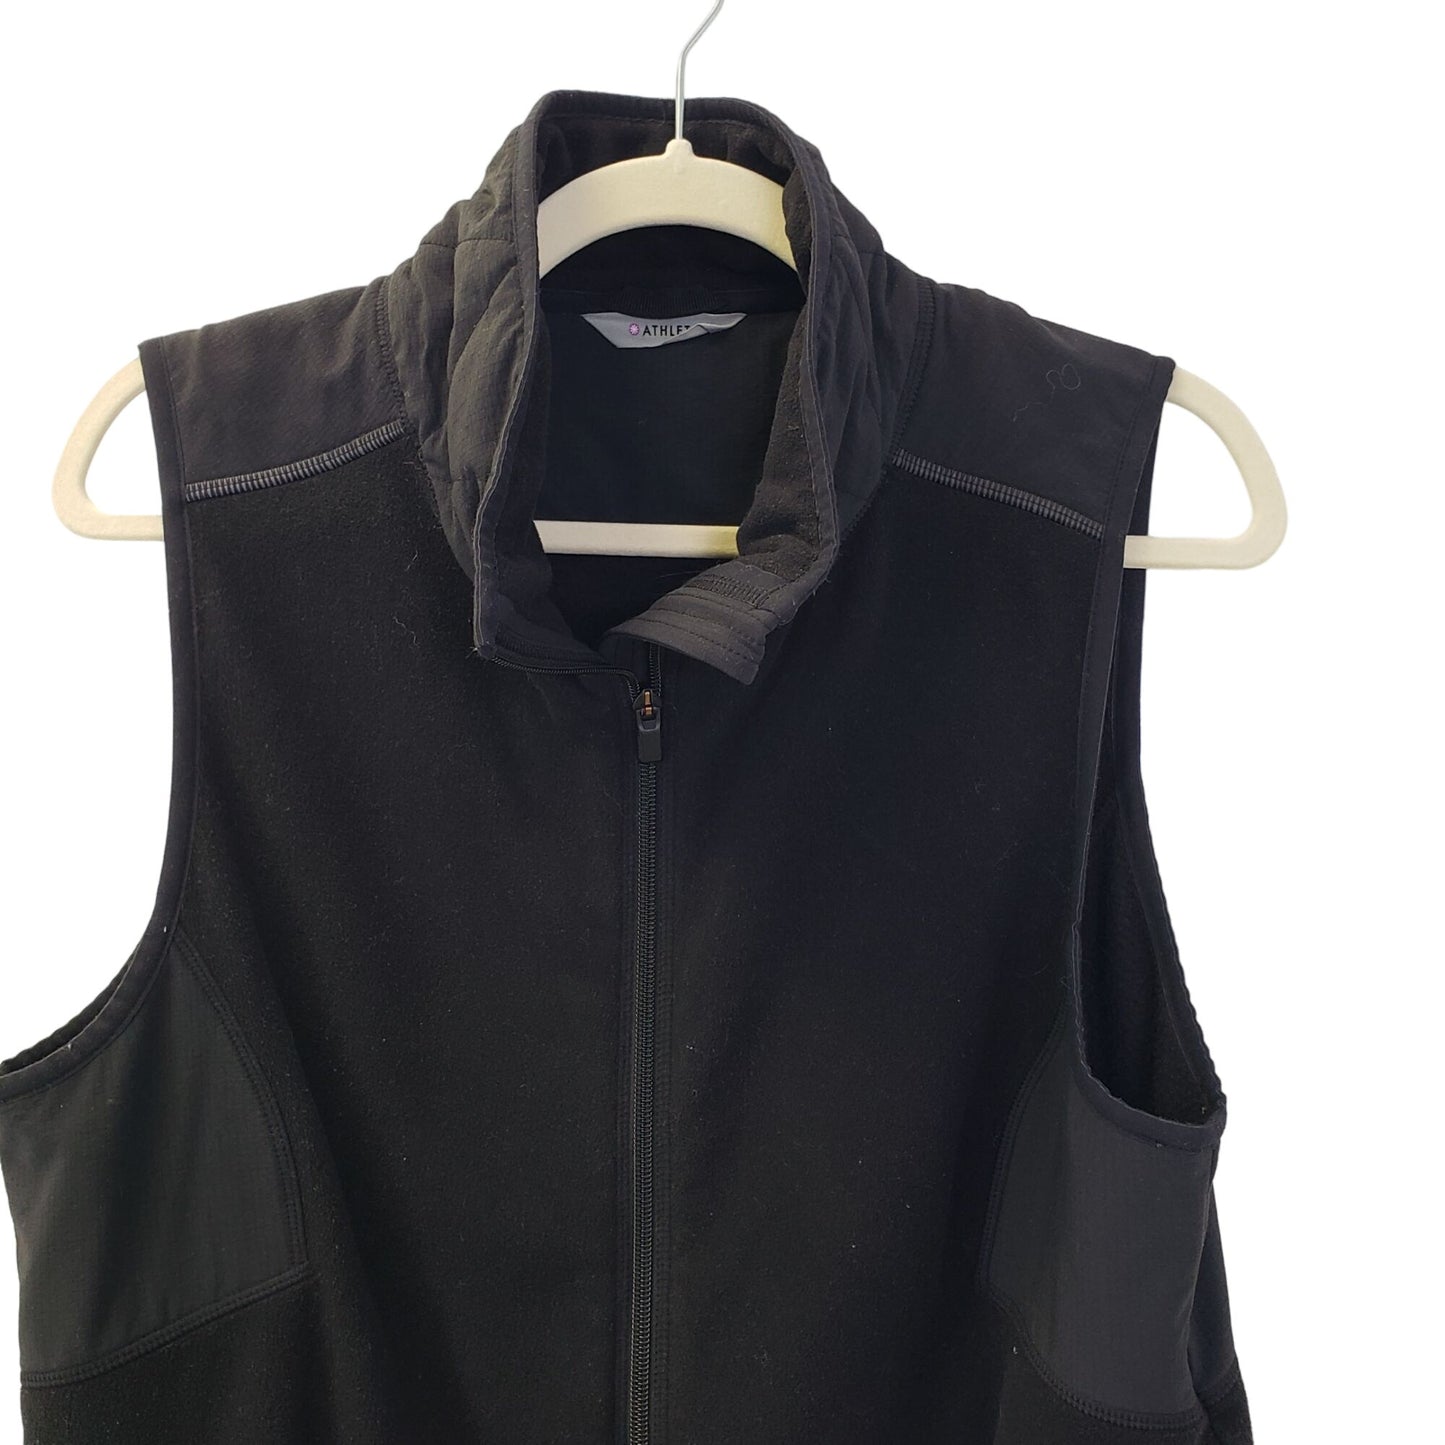 Athleta Full Zip Fleece Activewear Vest Size Medium (est)